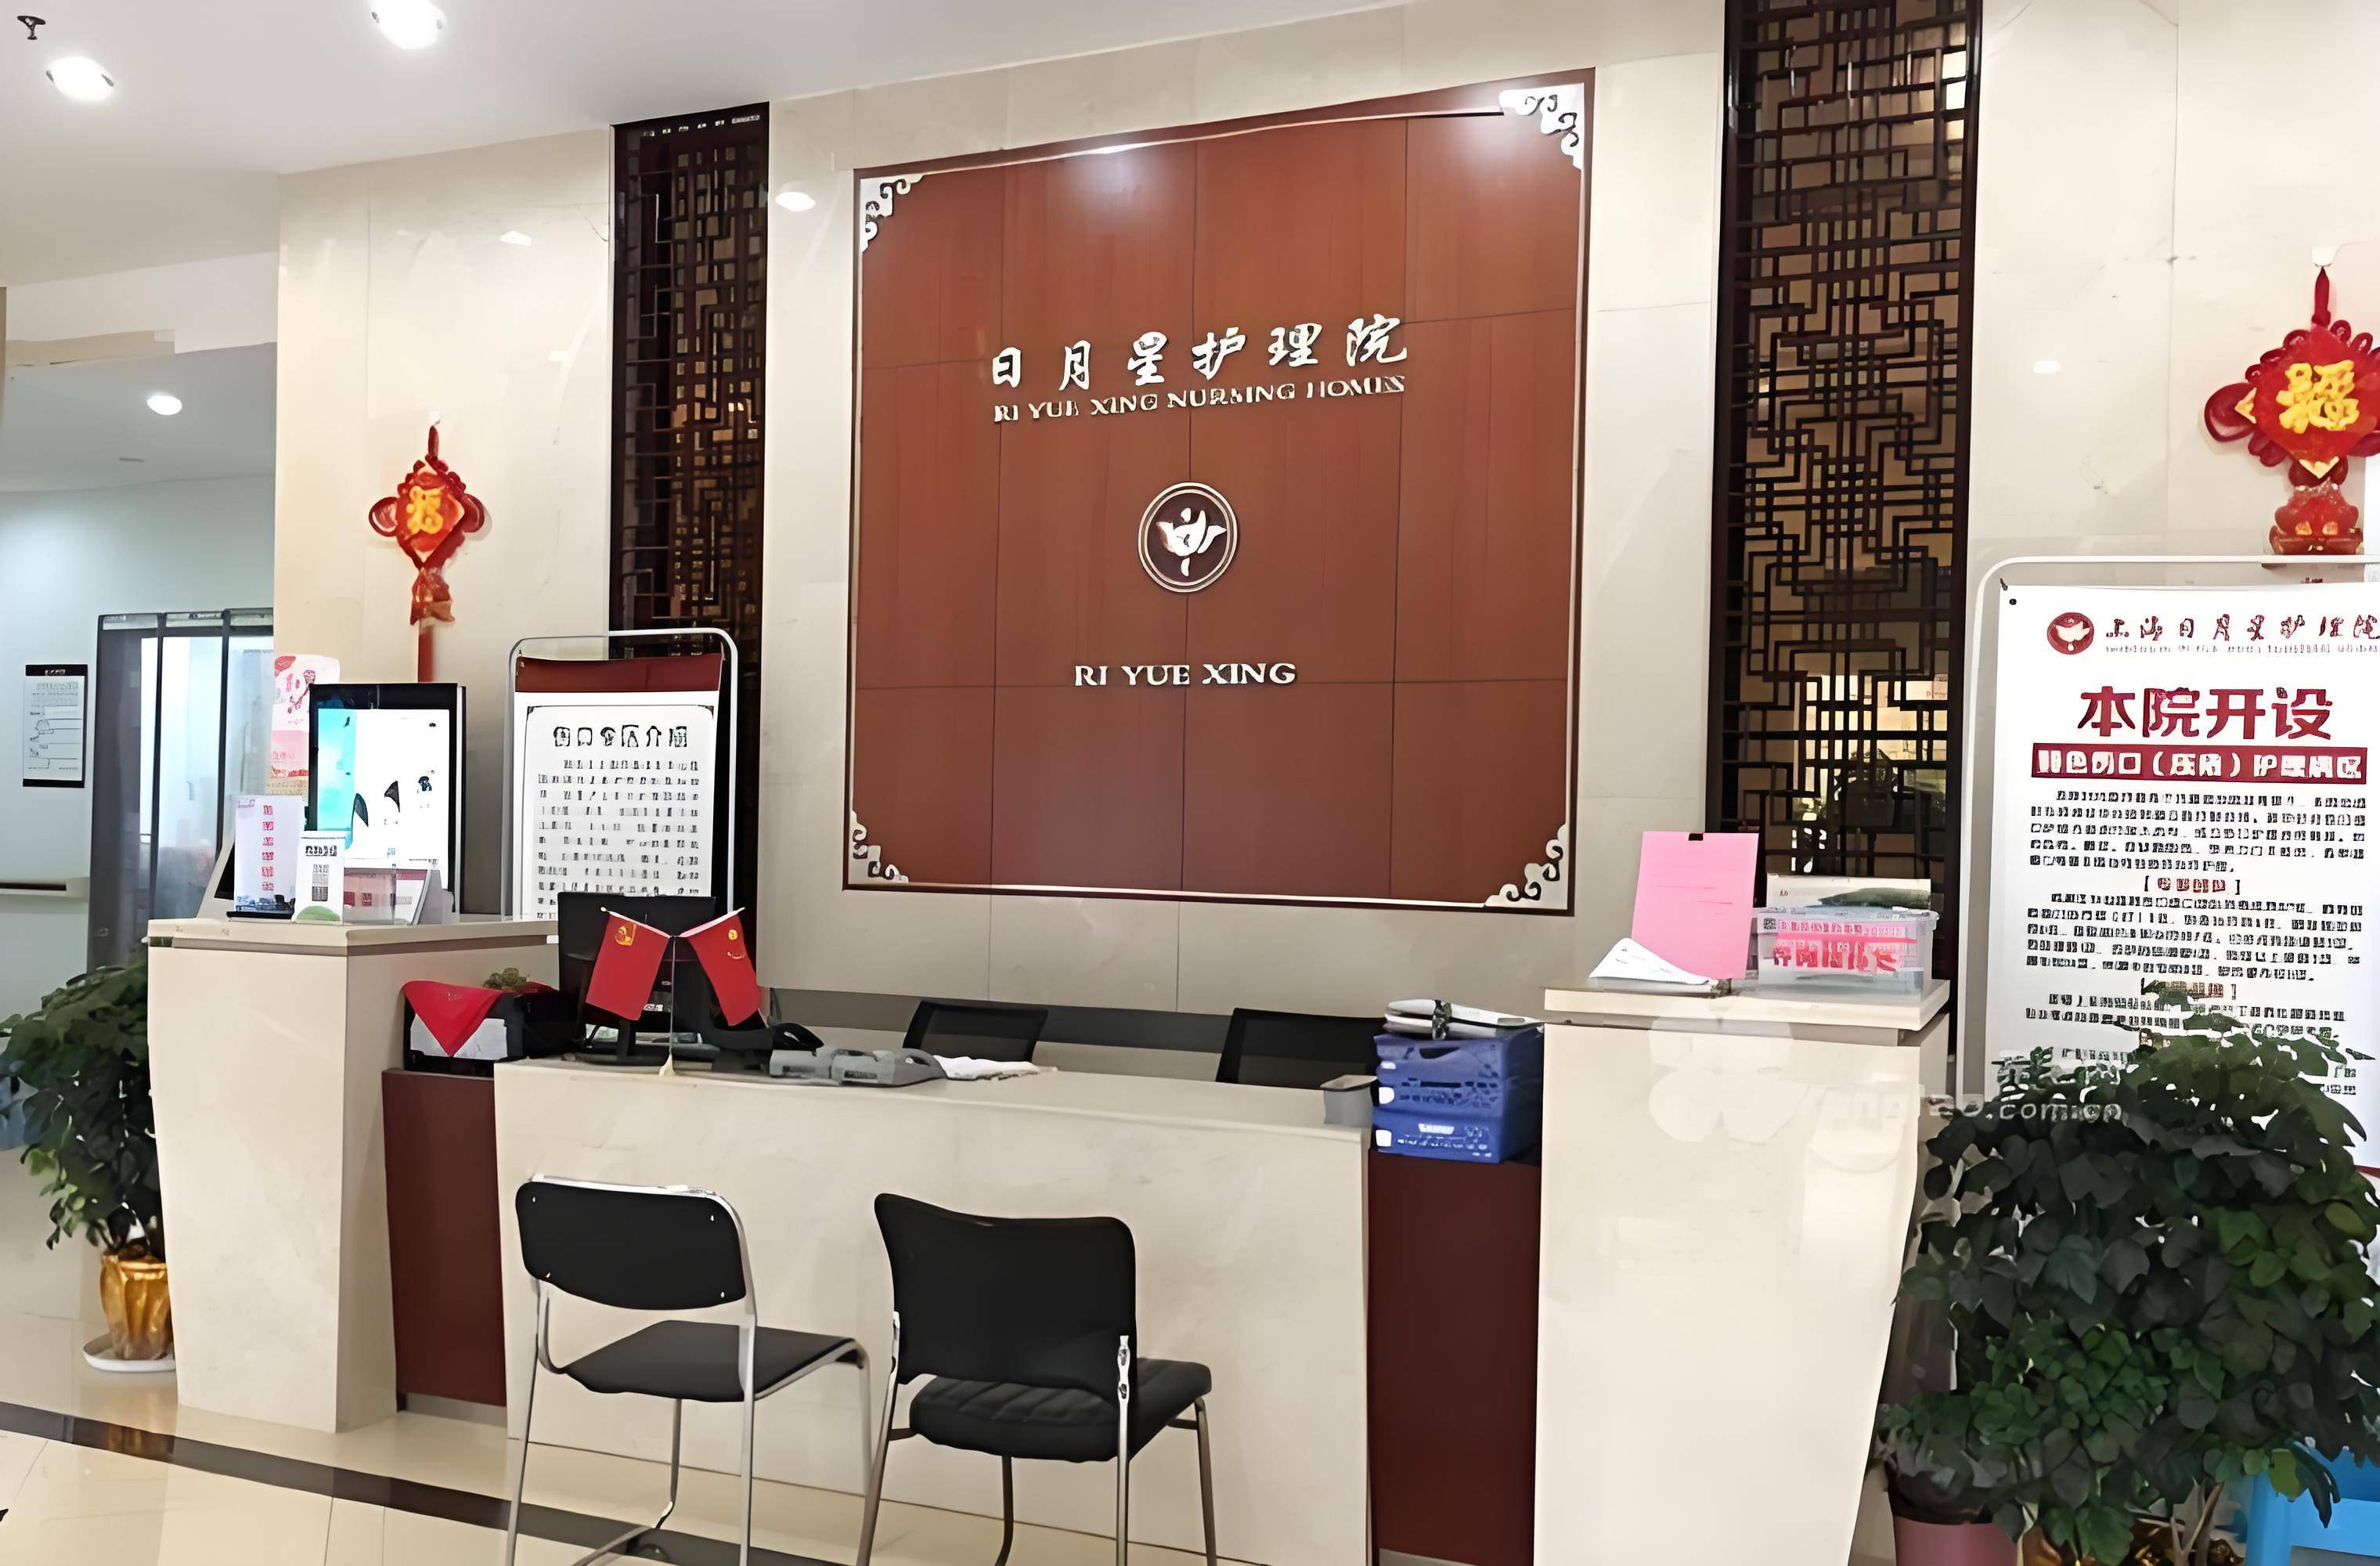 上海杨浦区日月星护理院收费价格、服务内容一览